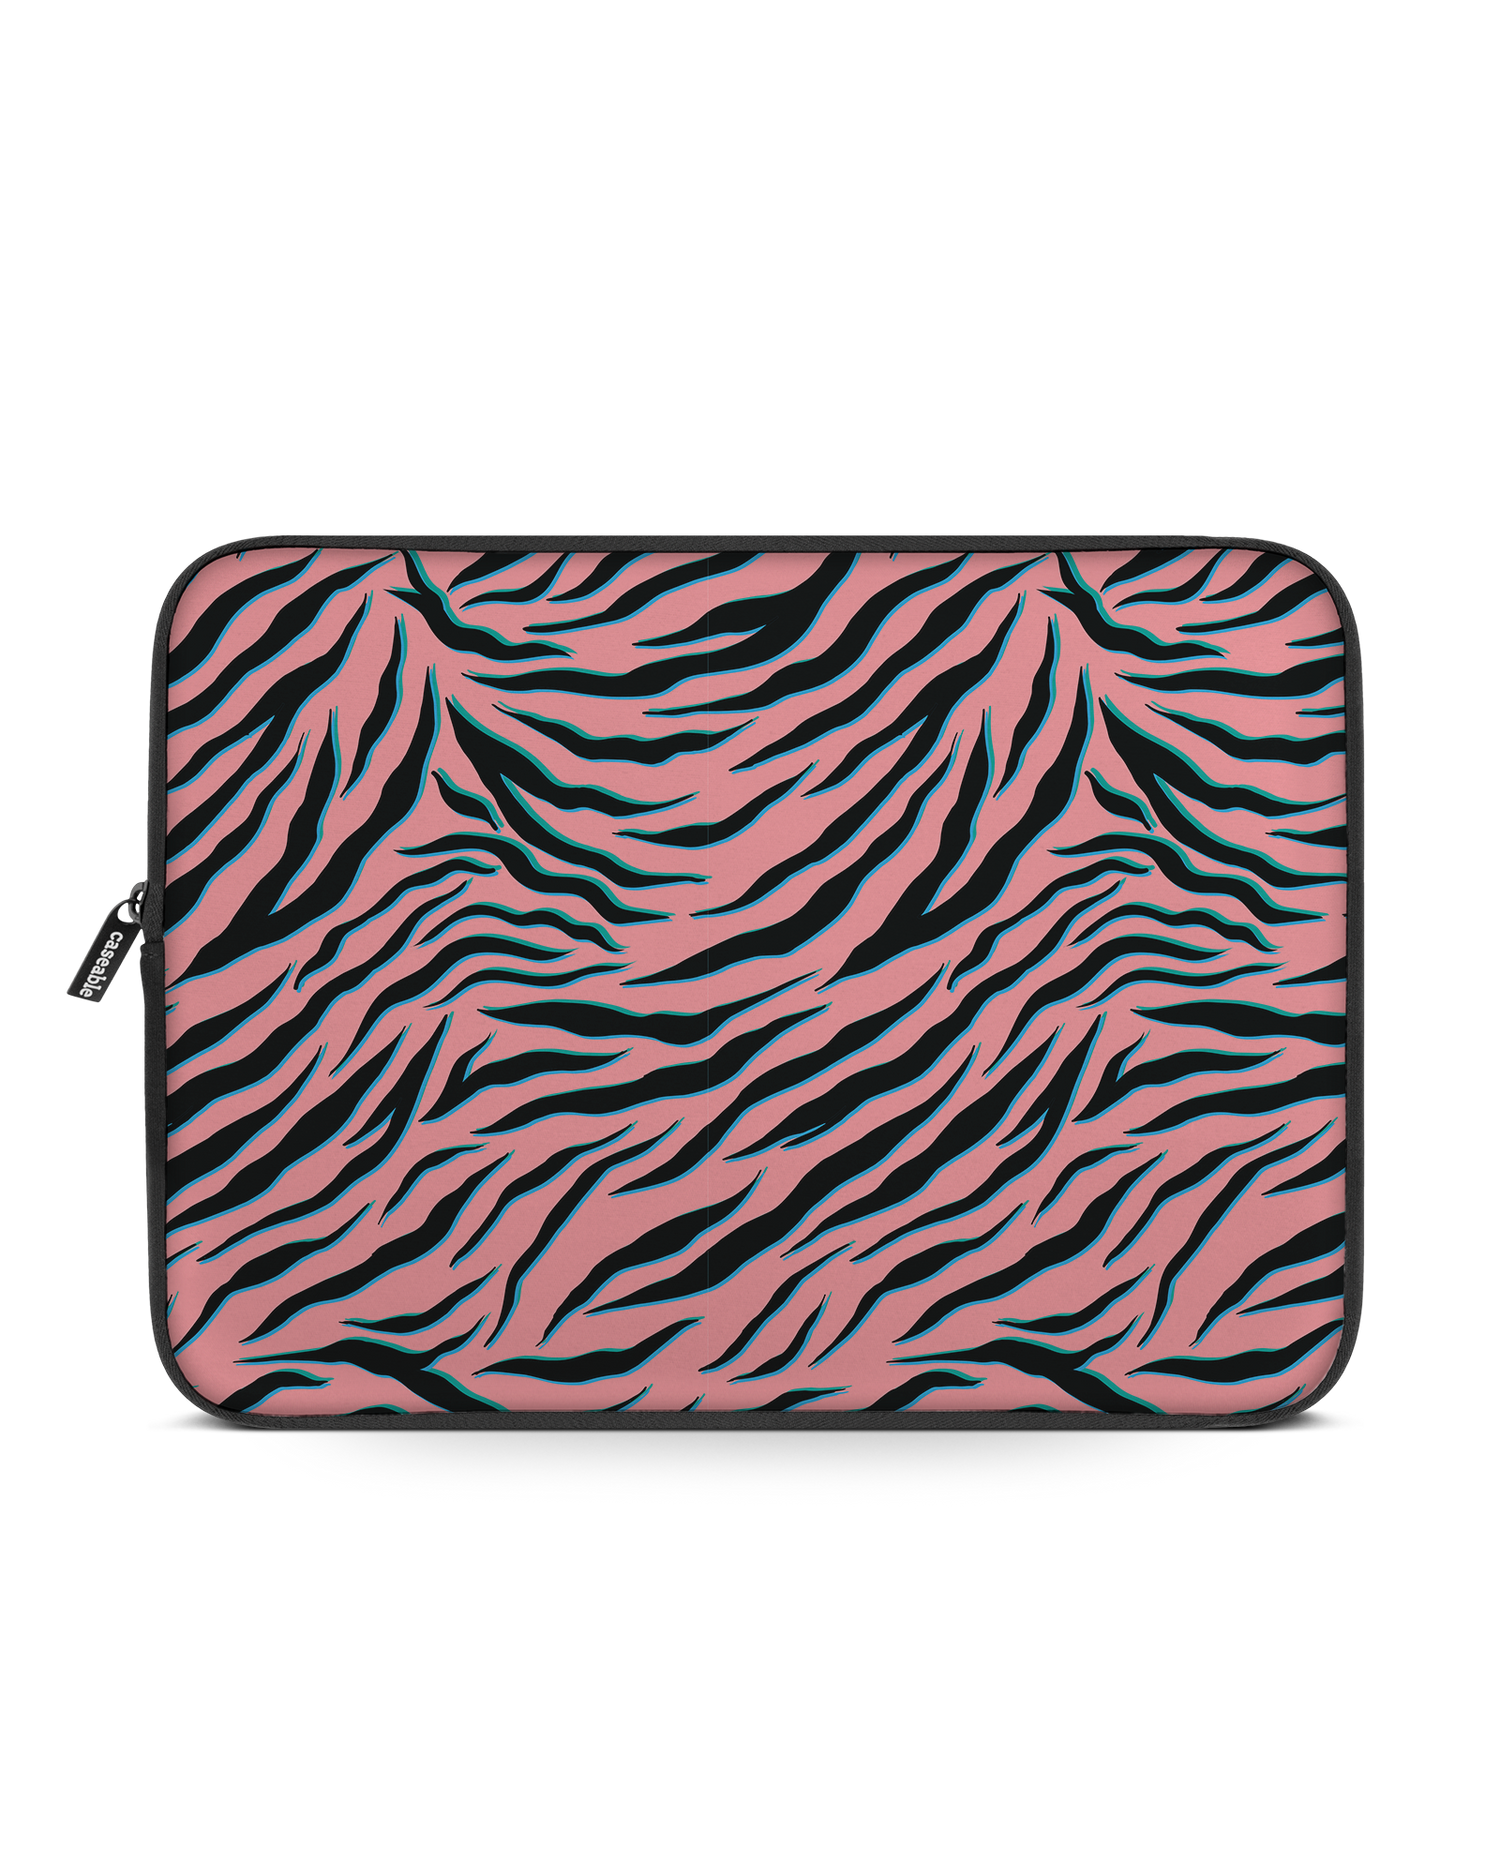 Pink Zebra Laptophülle 15 Zoll: Vorderansicht